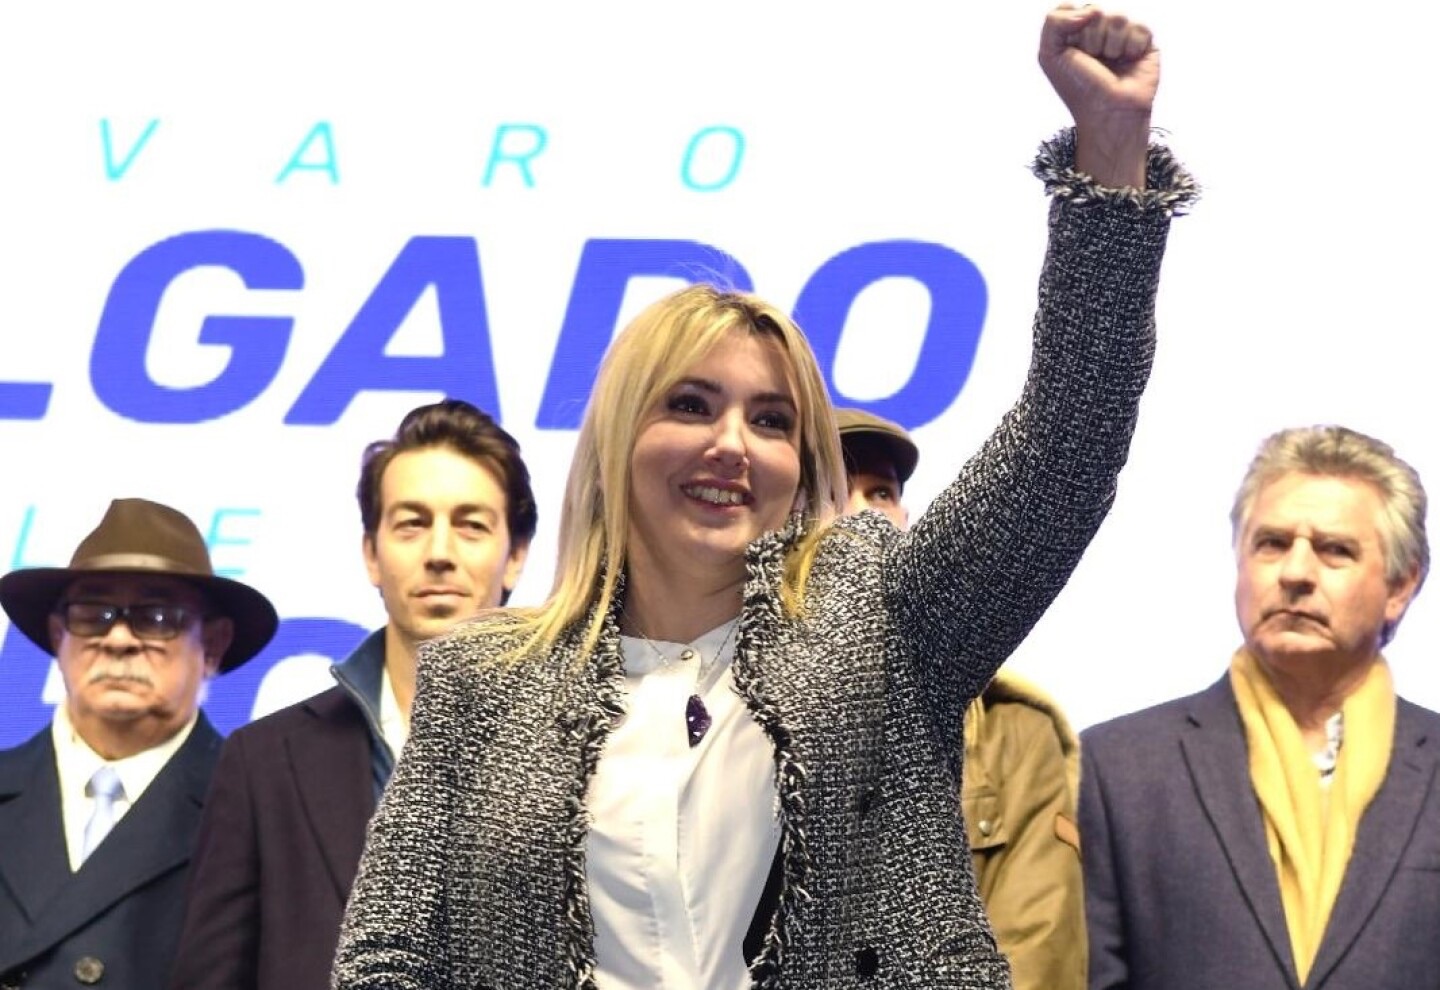 La candidata a vicepresidente por el PN, Valeria Ripoll, estará en Ciudad del Plata este viernes